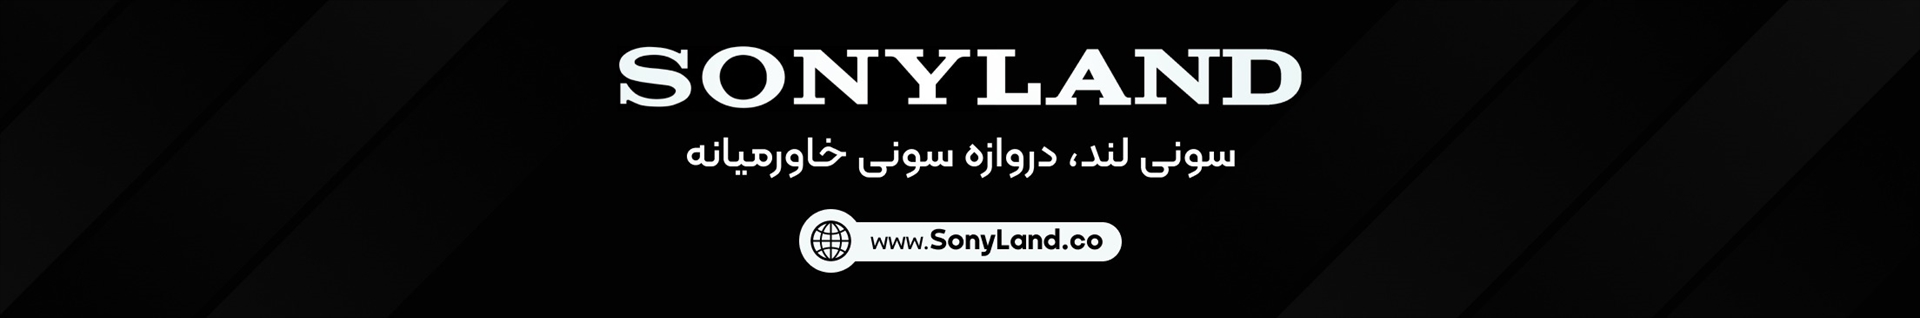 سونی لند | Sony Land